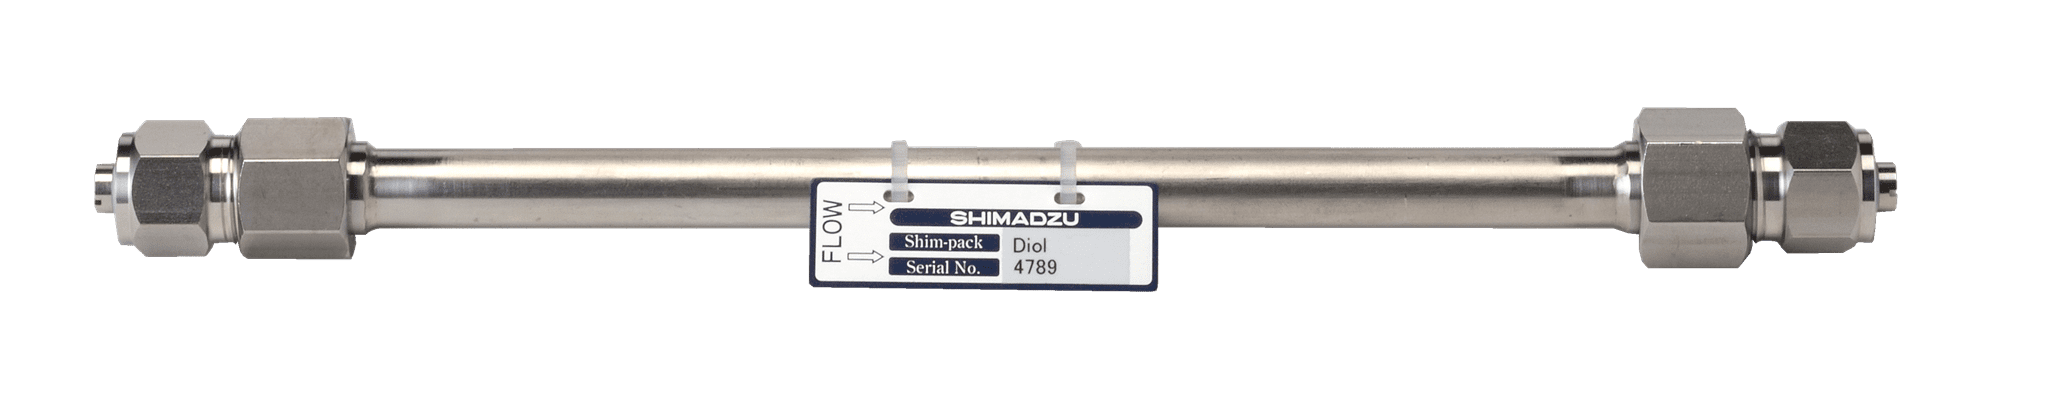 Bild von Shim-pack Diol-150; 5 µm; 500 x 7.9